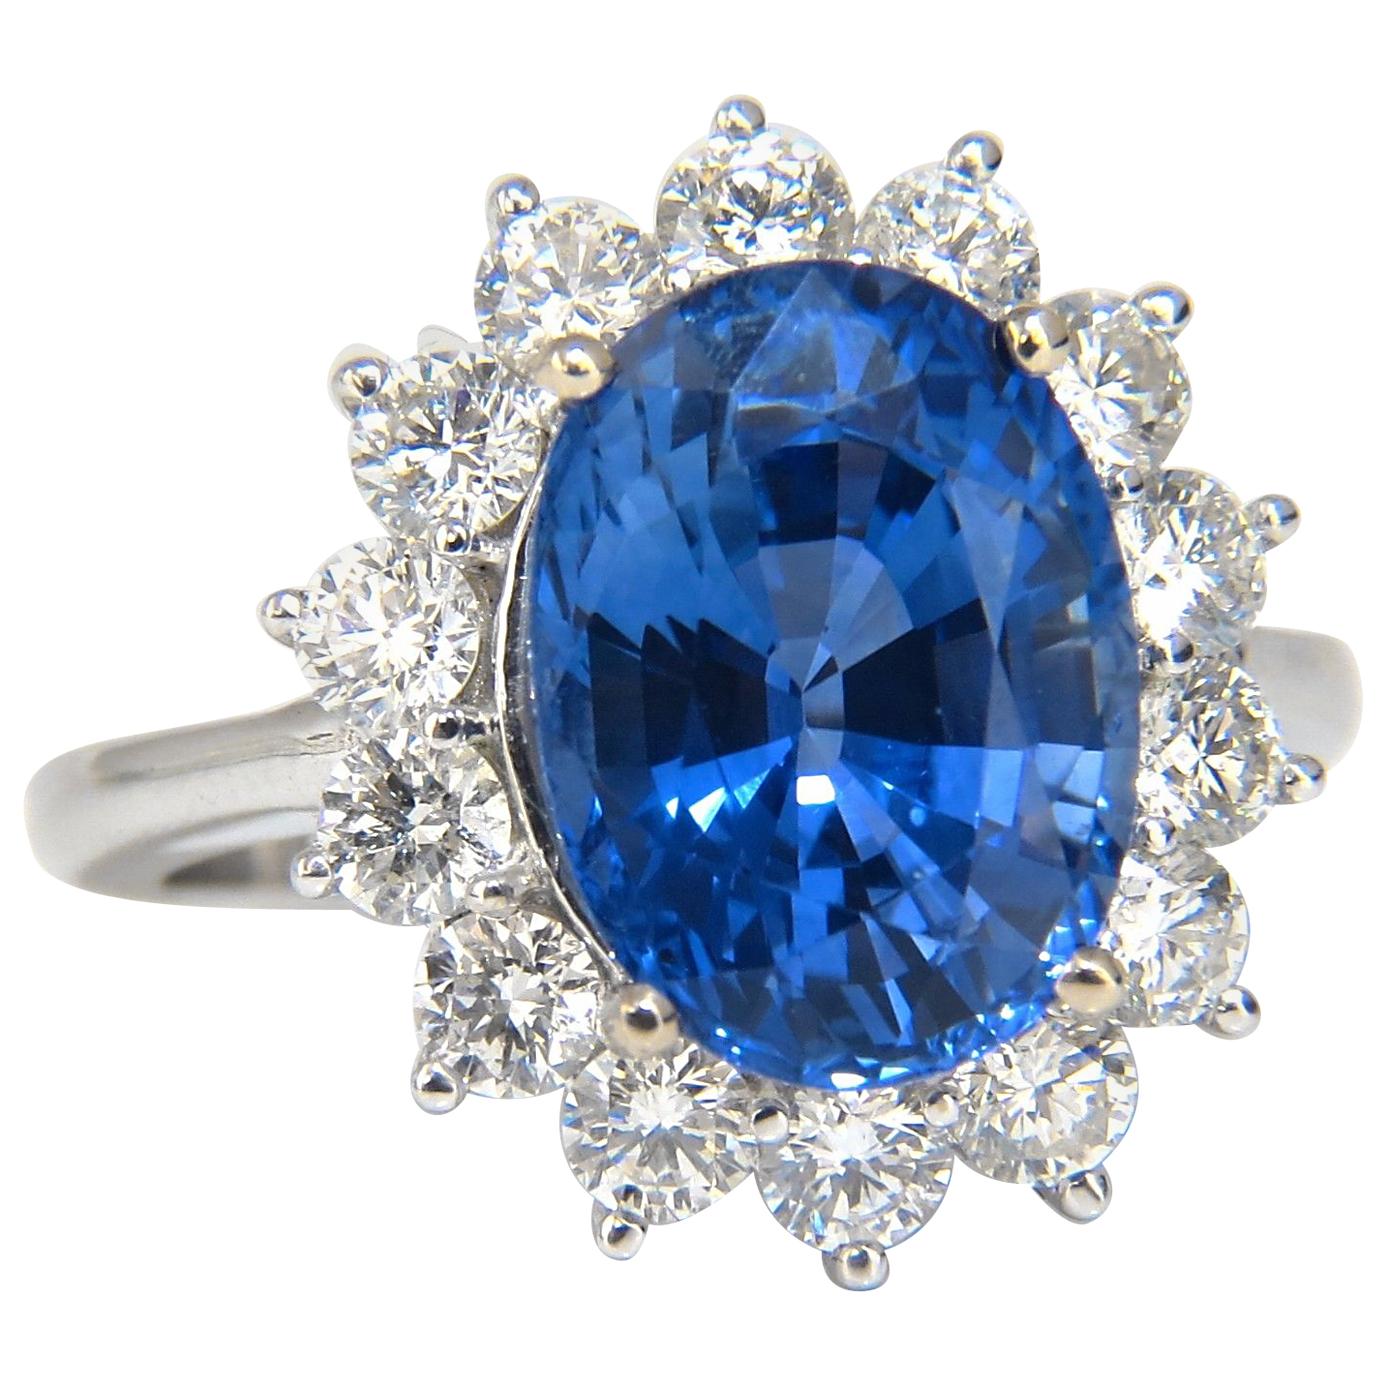 GIA Certified 7.39 Carat Natural Blue Sapphire Diamond Ring 18 Karat